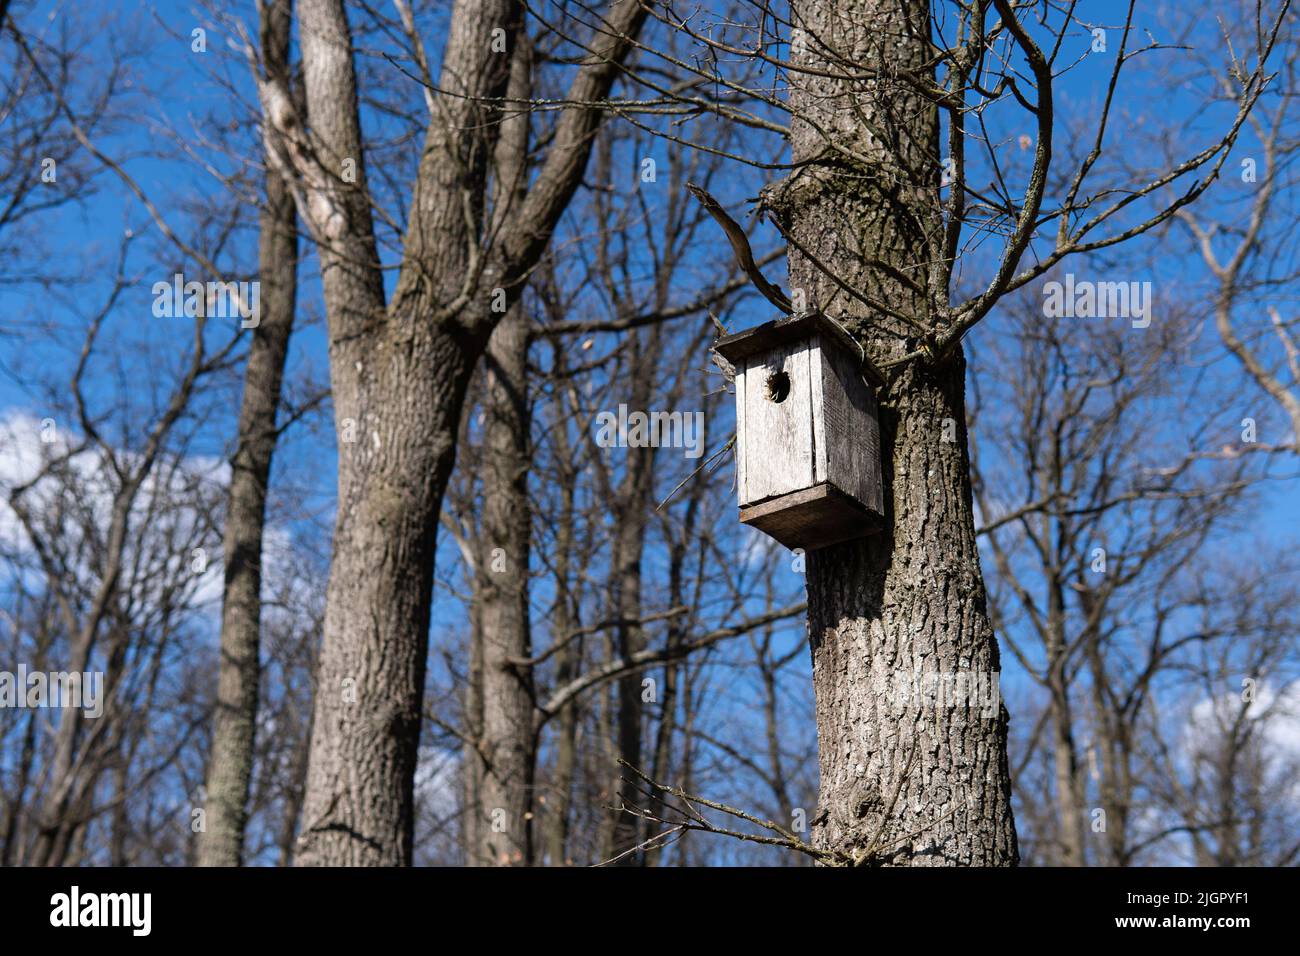 Casa di uccelli in legno fatta a mano su albero con il foro d'ingresso a forma di cerchio. Prendersi cura degli uccelli selvatici nella foresta. Alberi sullo sfondo blu del cielo in tempo di sole. Foto Stock